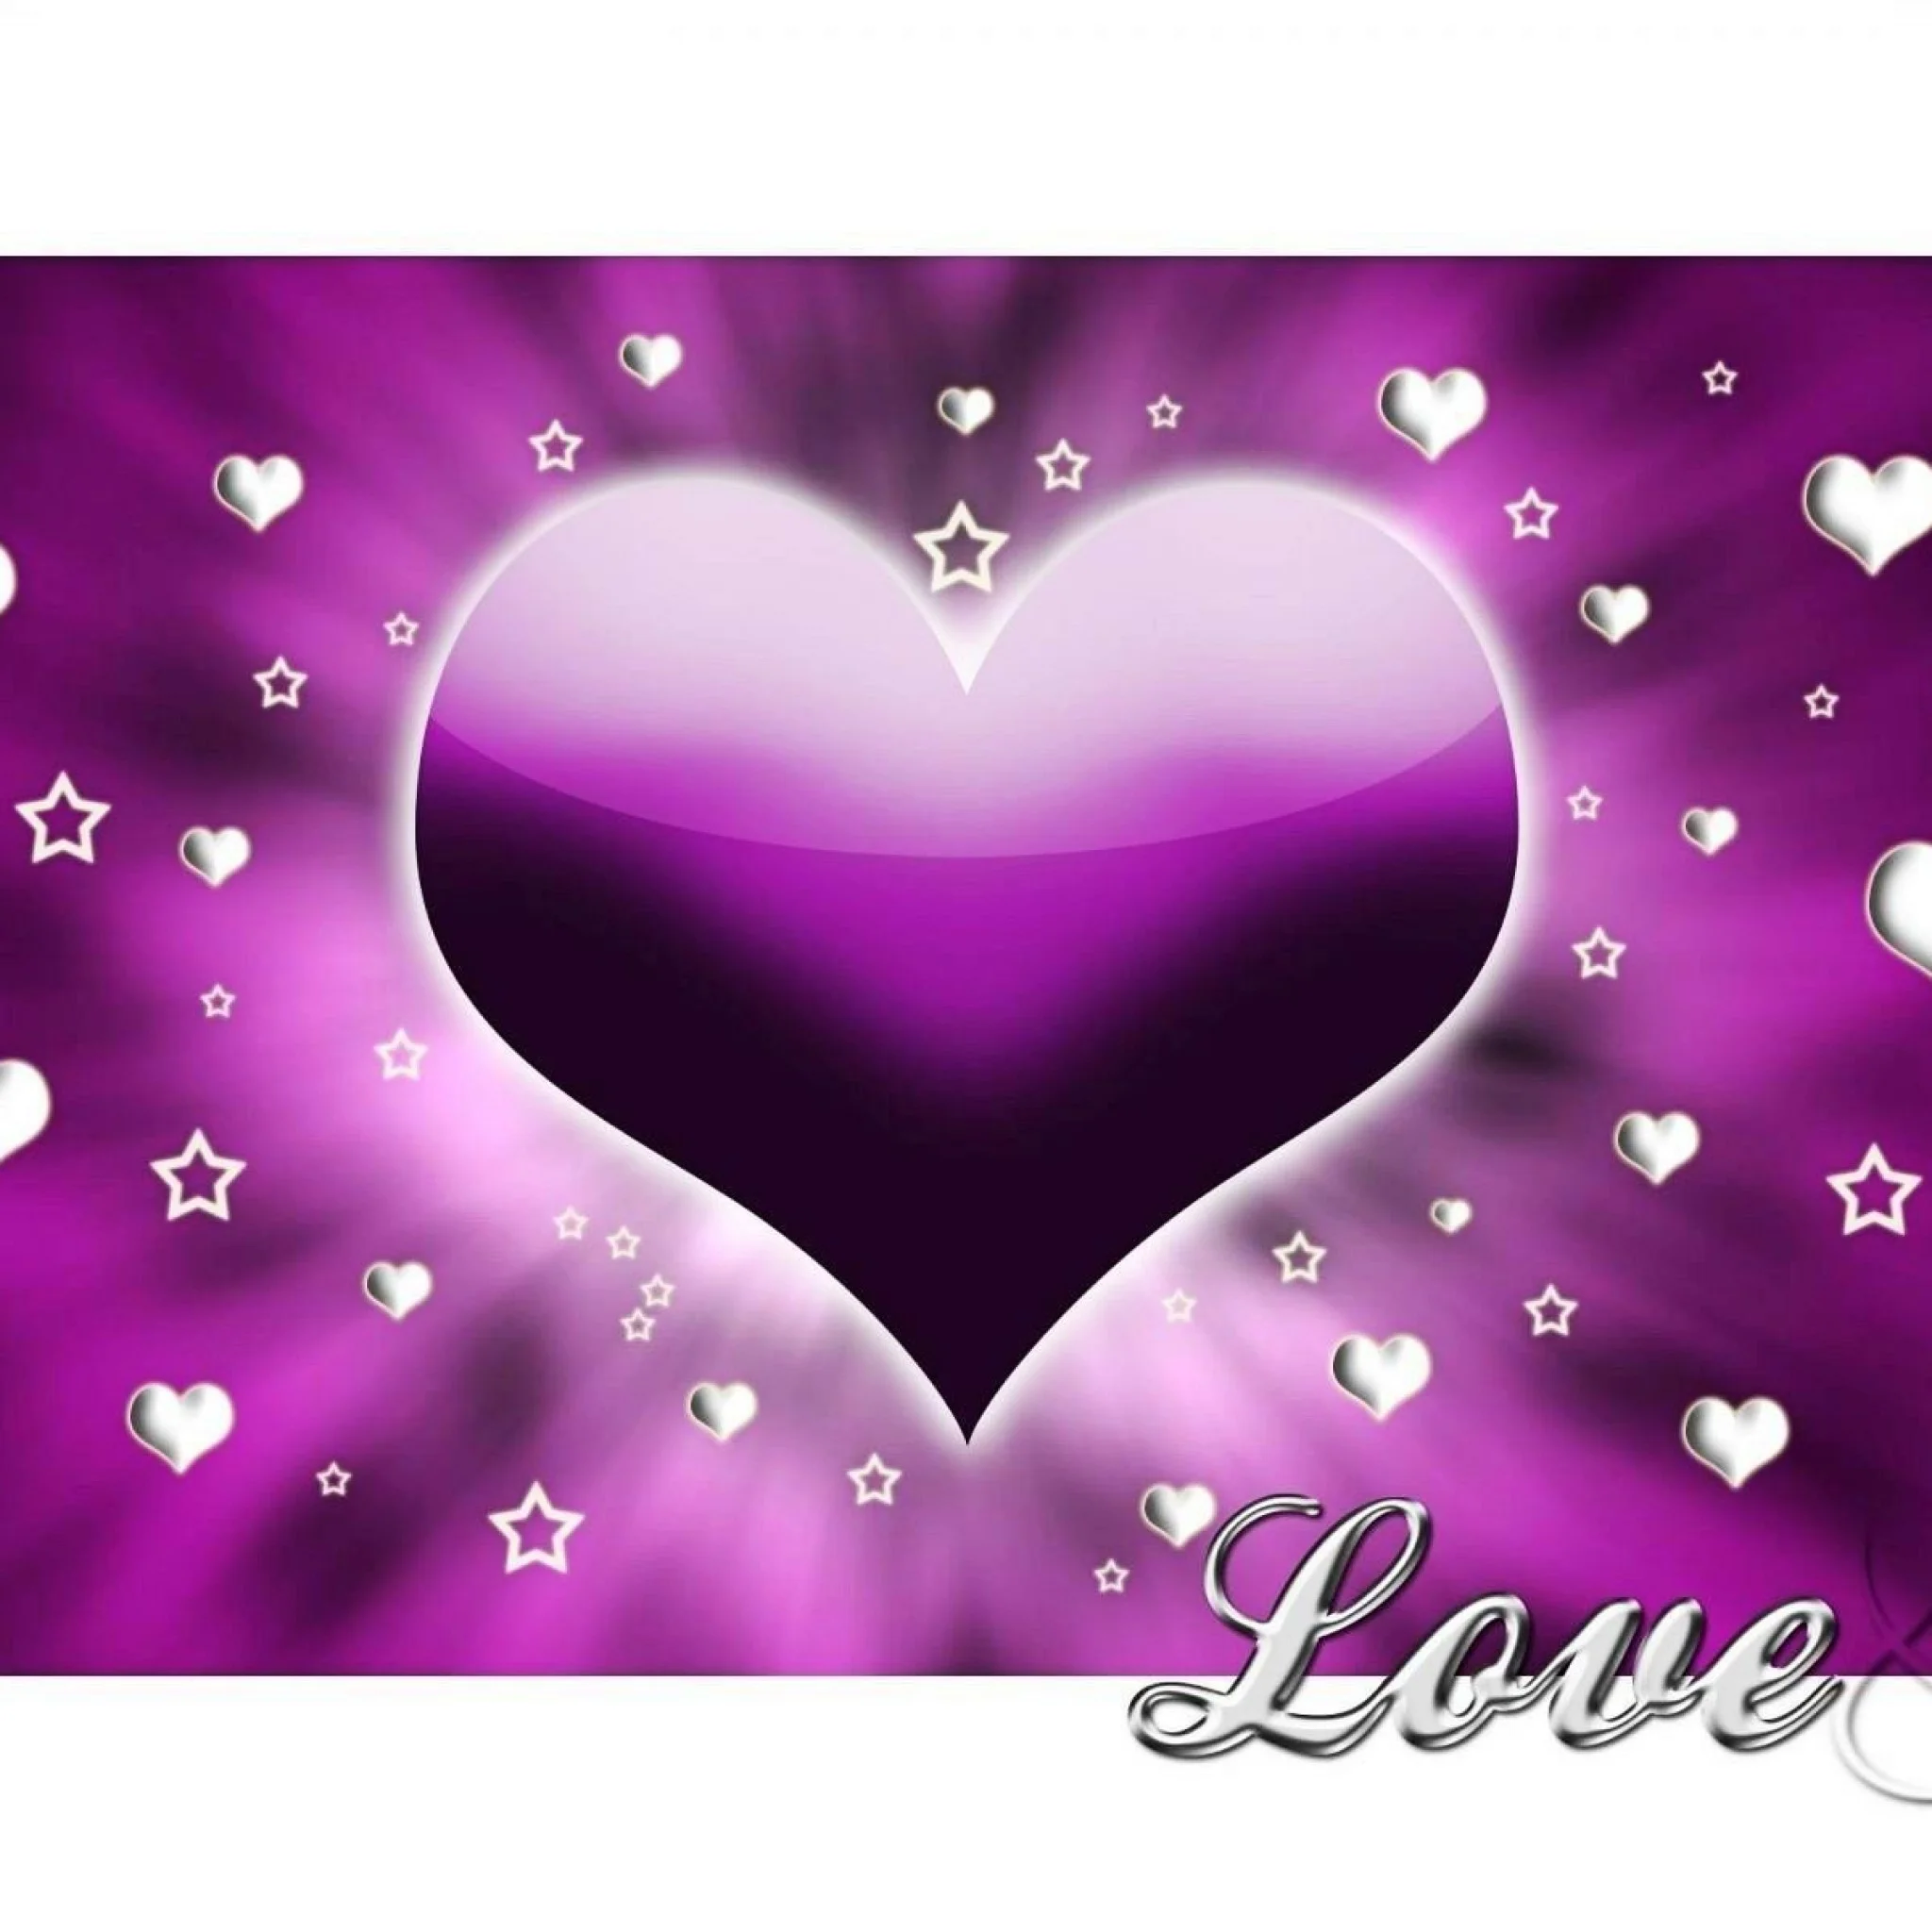 Heart Purple White Love Image Wallpaper Wallpaper computer best website wallpaperput.com